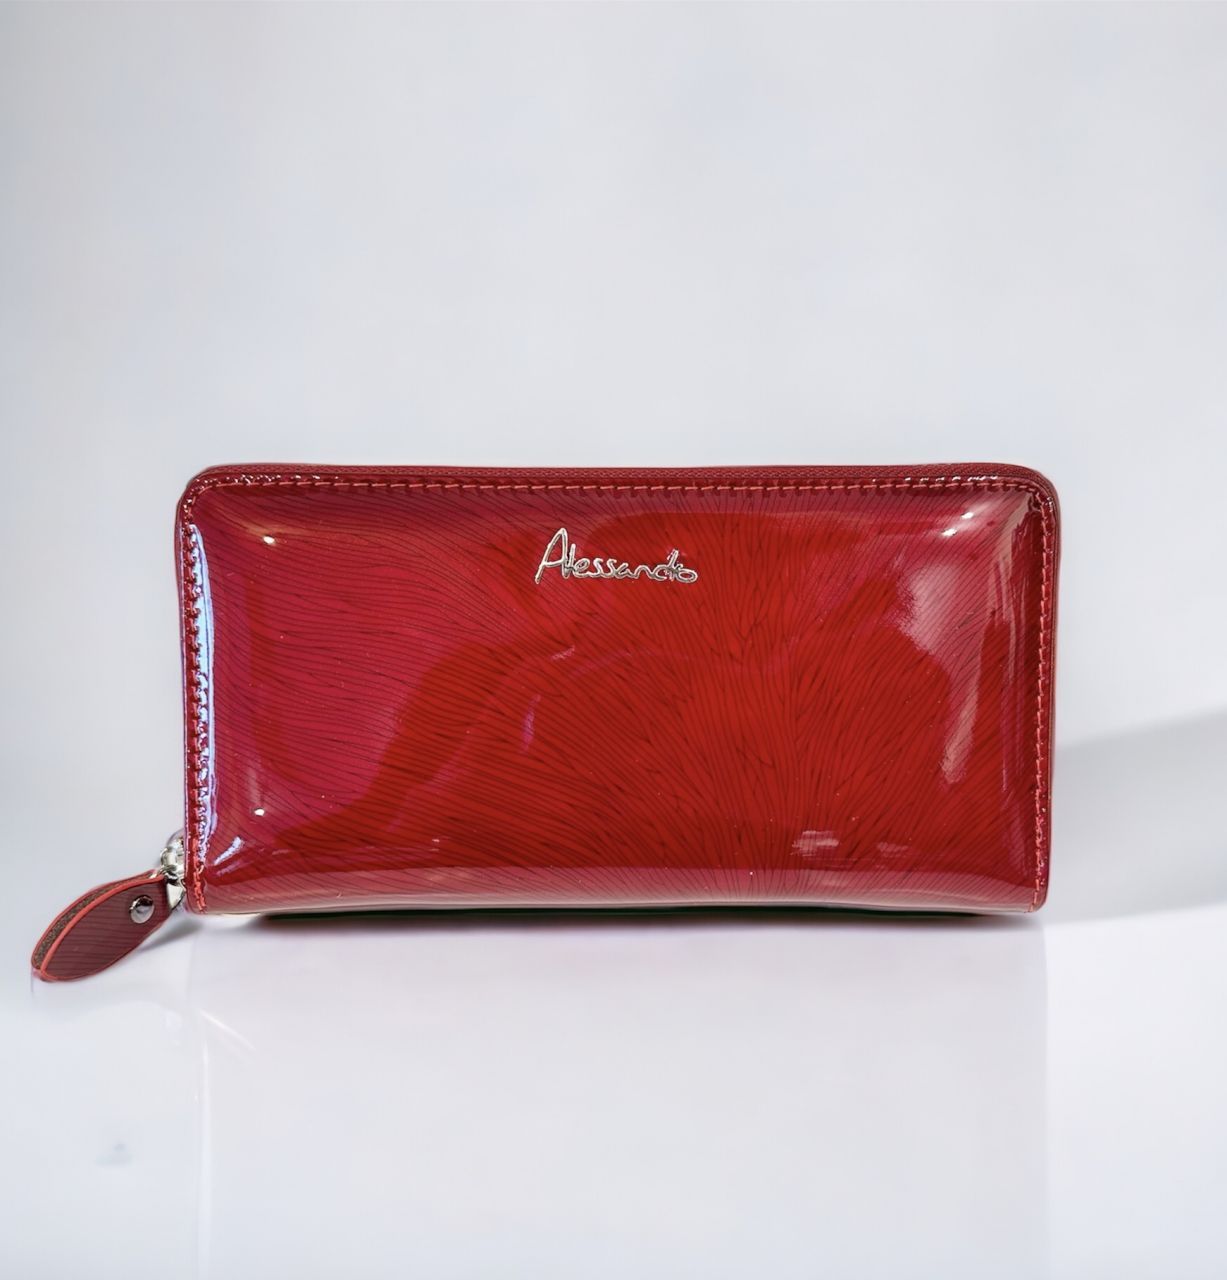 Piros Alessandro női körbe cipzáros pénztárca